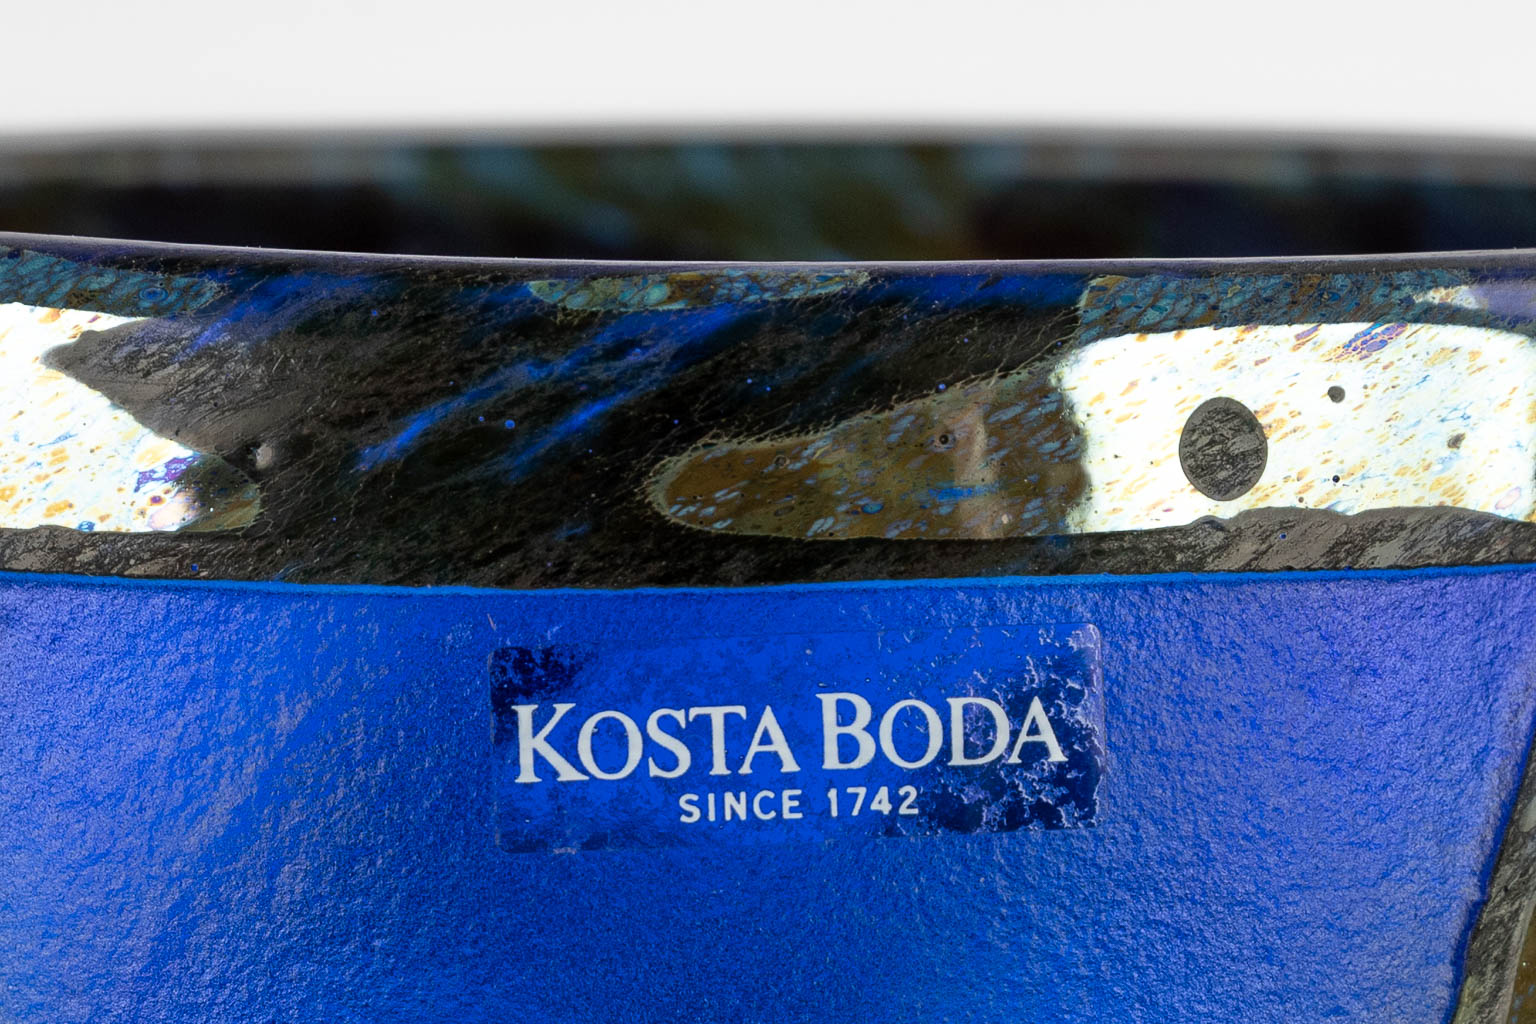 Bertil VALLIEN (1938-2018) for Kosta Boda, an art glass vase. Sweden, 20th C. (H:21 x D:15 cm)